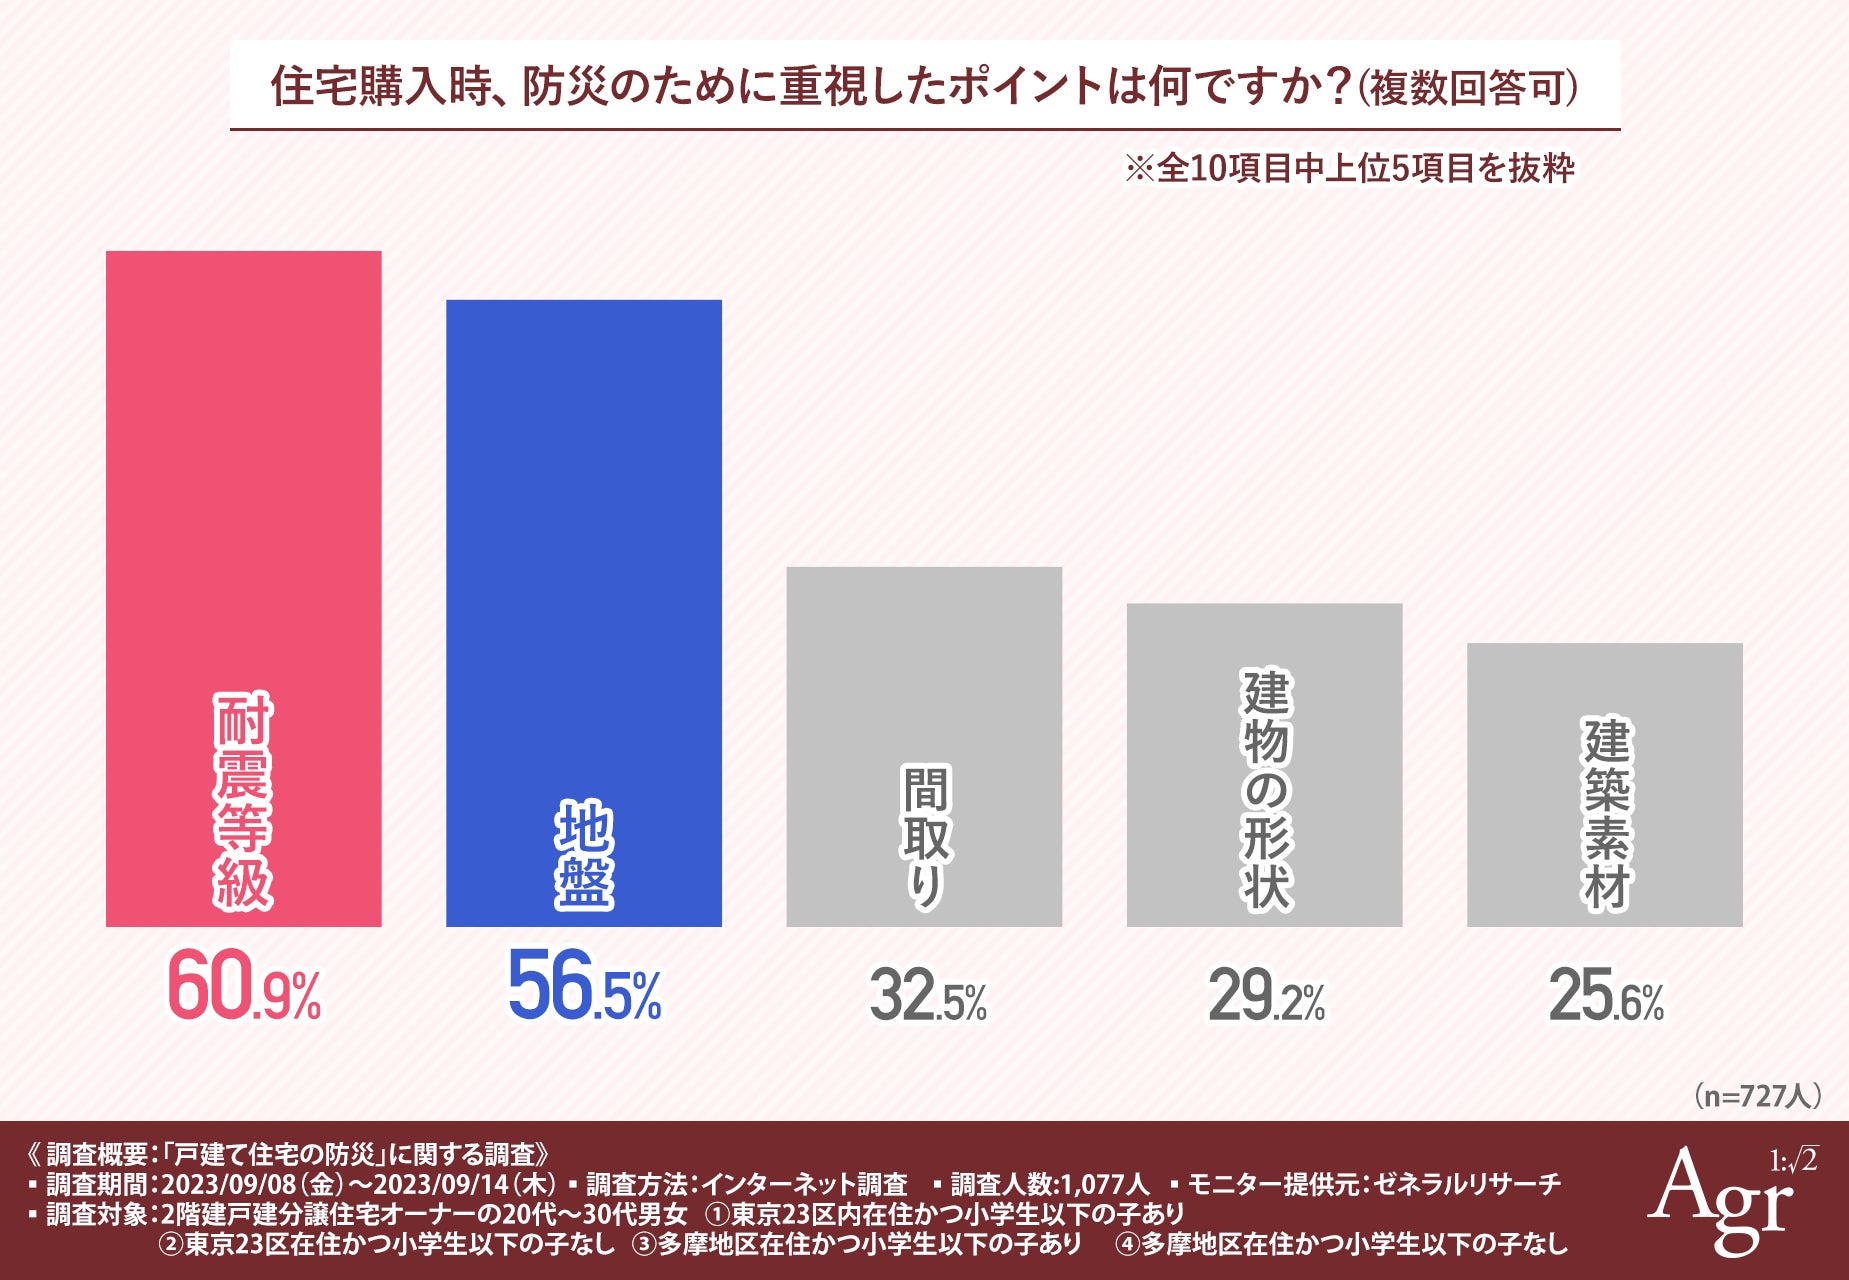 【東京エリア別|戸建て住宅の防災調査】同じ都内でも、23区内在住の子どもがいる家庭とそれ以外では防災意識に大きな差がのサブ画像2